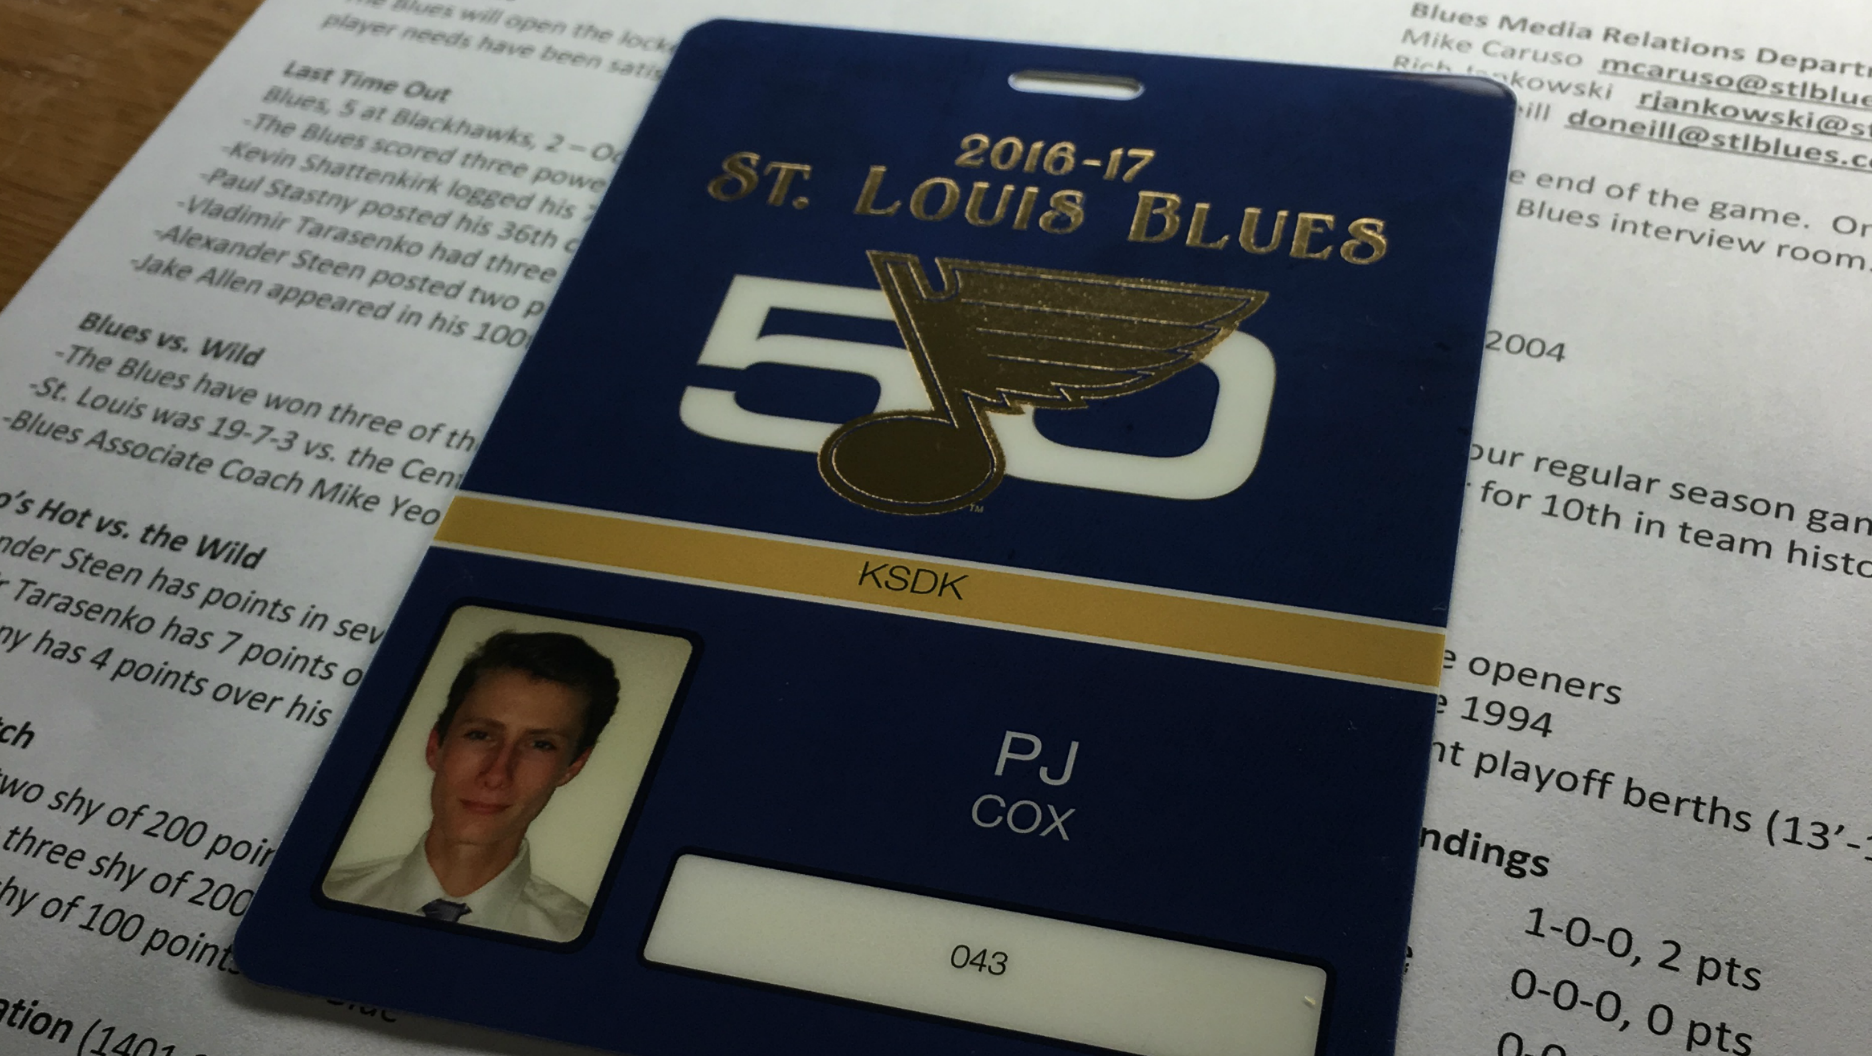 200+] St Louis Blues Pictures